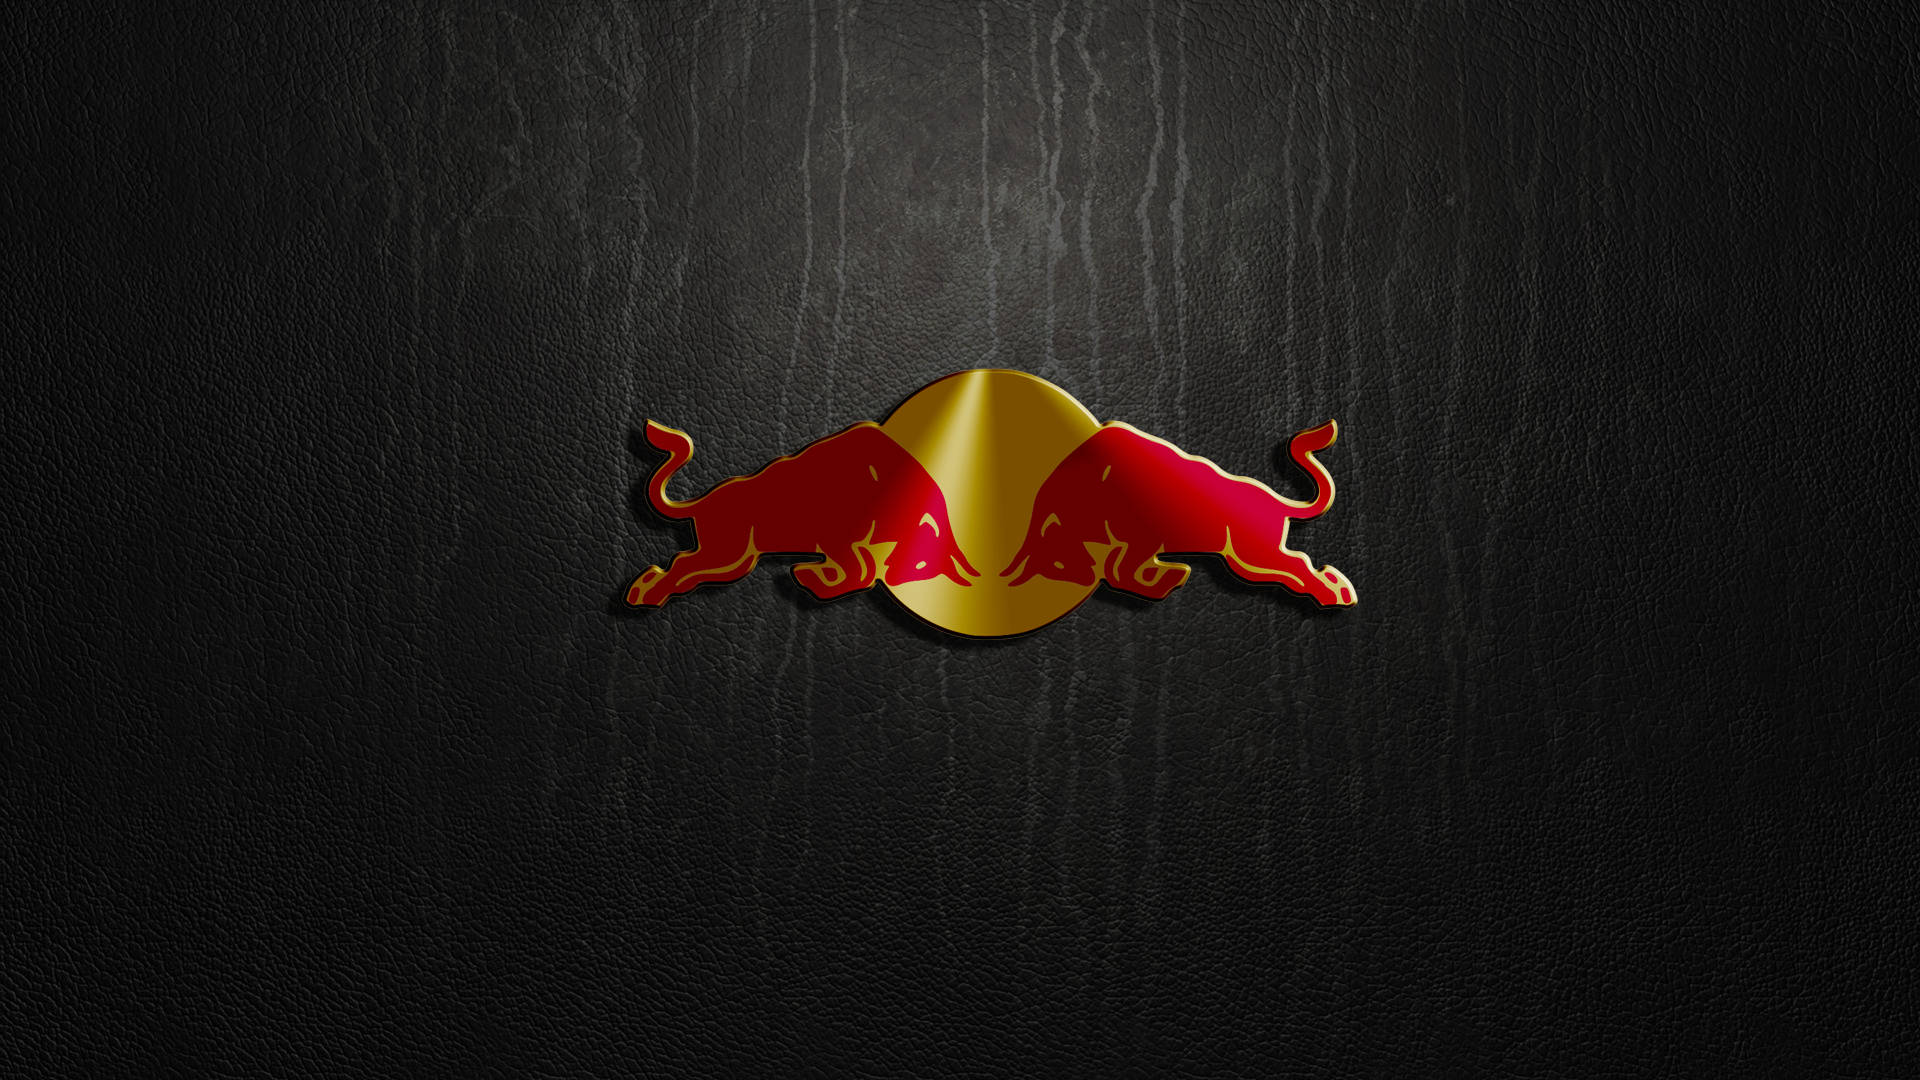 Red Bull Wallpaper